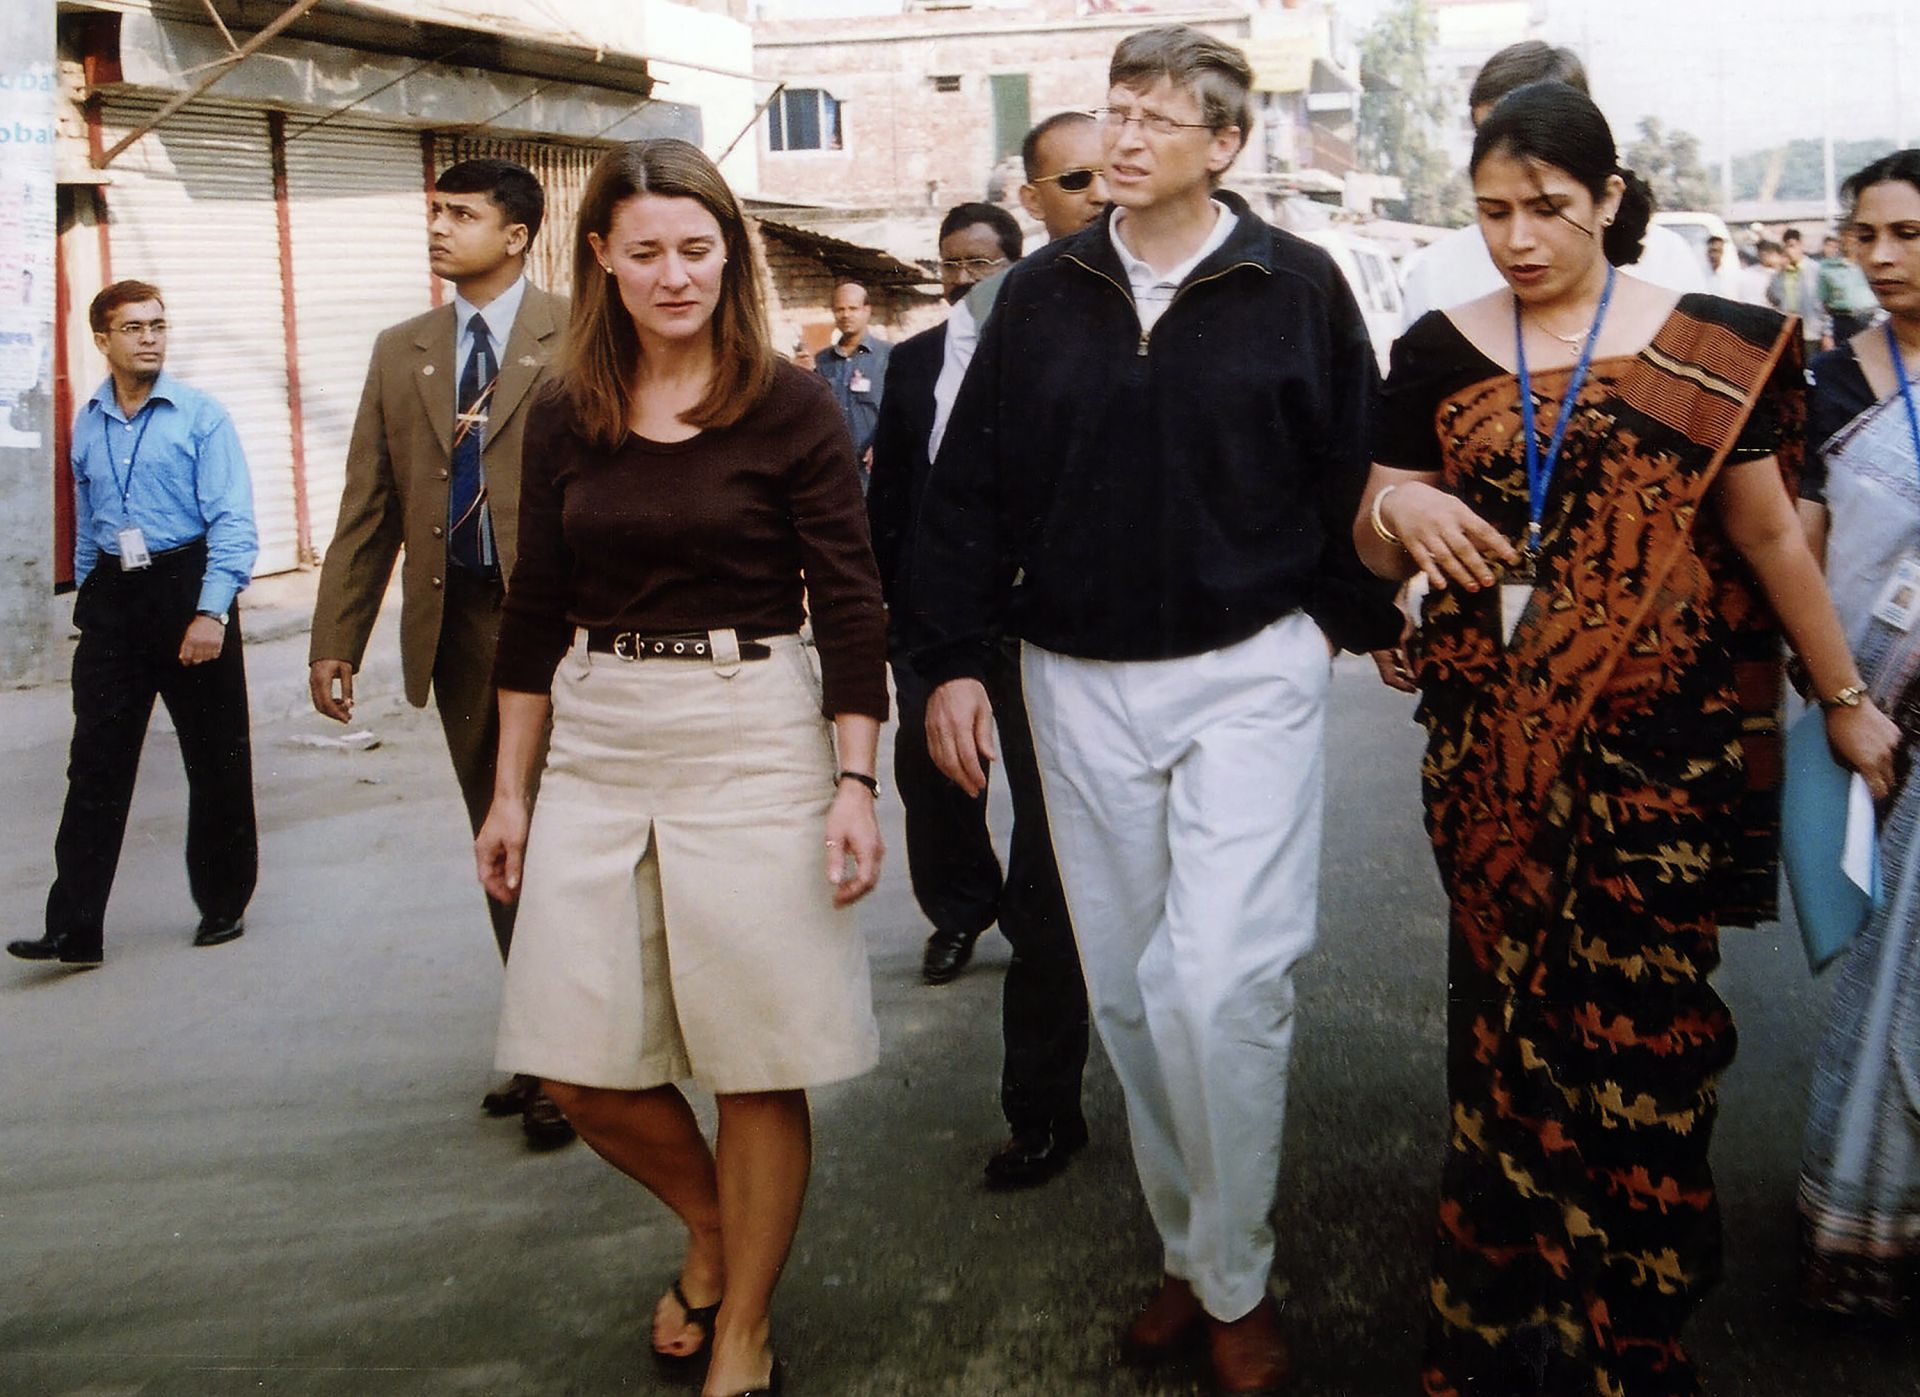 Бил и Мелинда Гейтс през декември 2005 година, Бангладеш